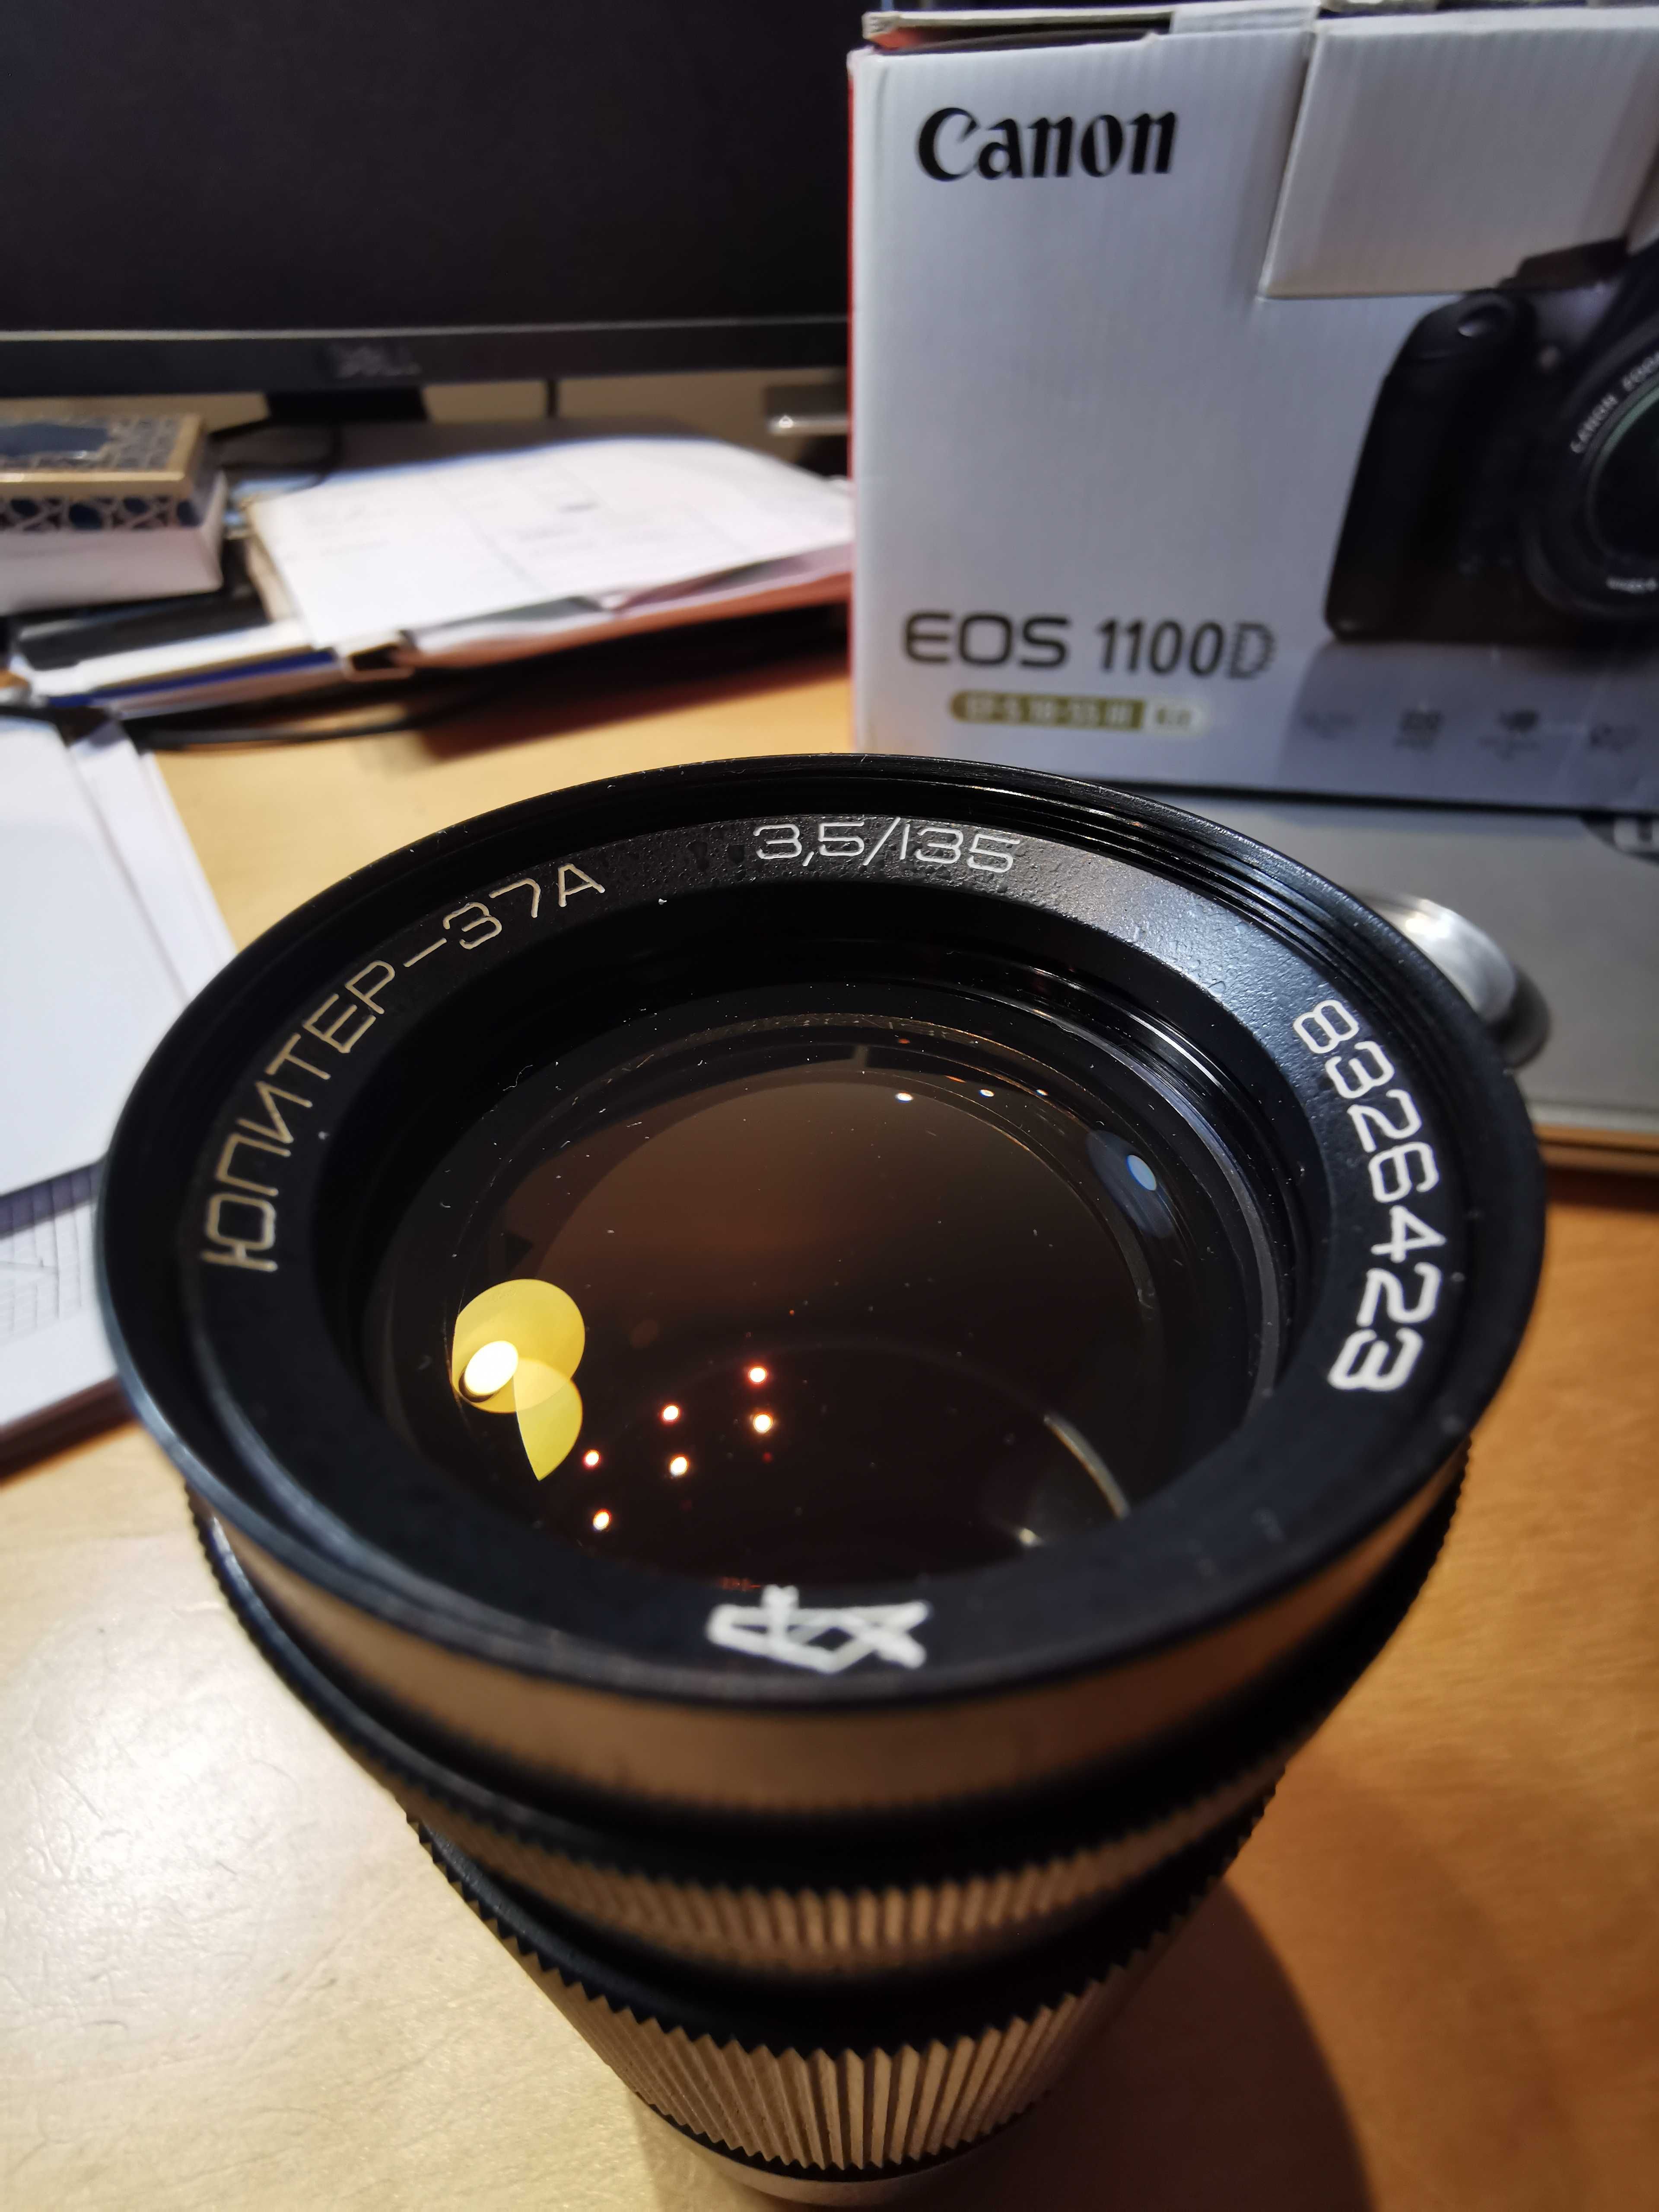 Canon EOS 1100D duży zestaw! Niski przebieg + 2 obiektywy, konwertery